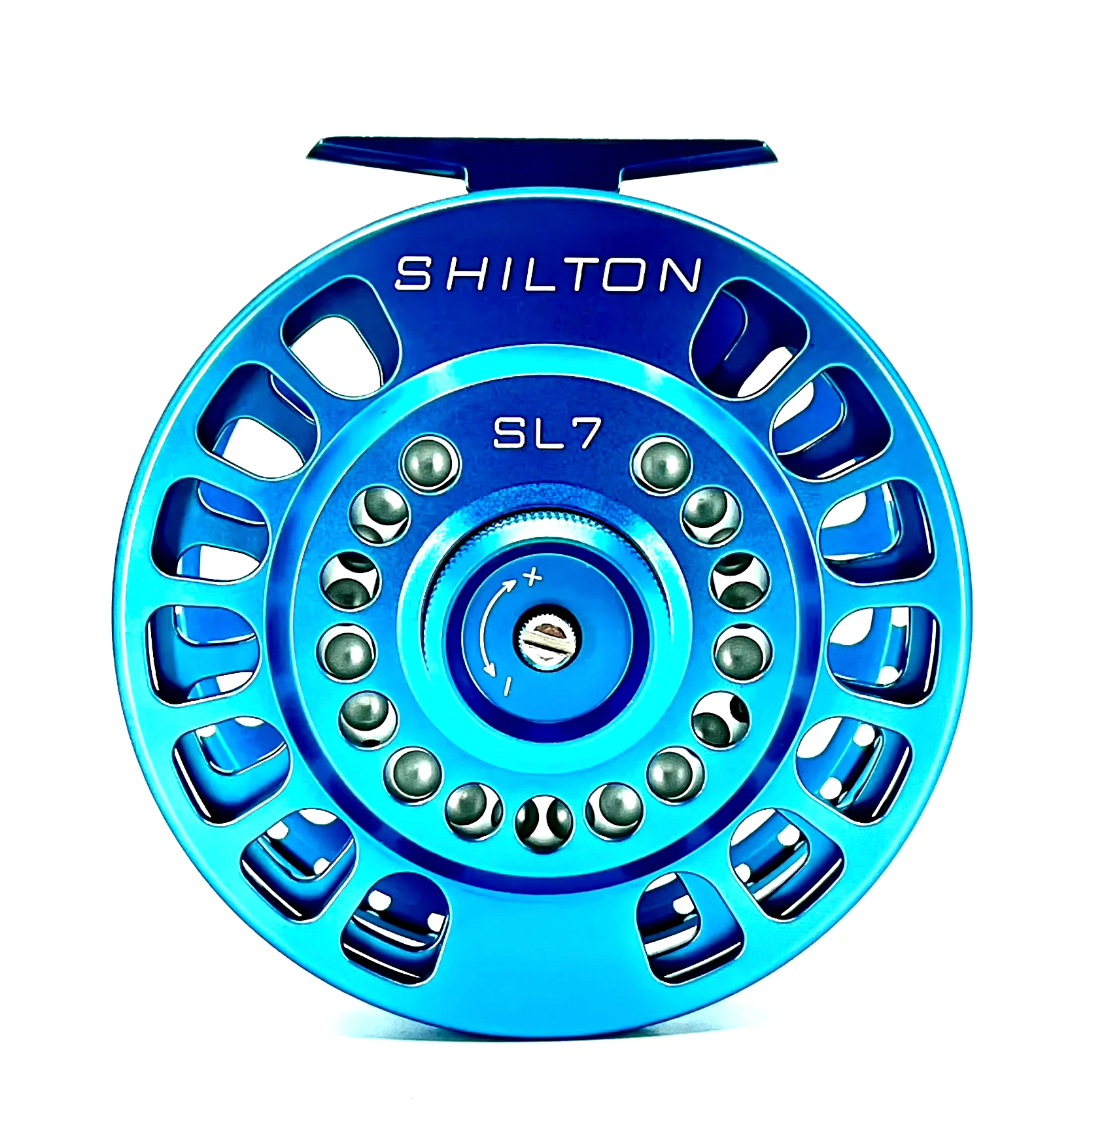 Shilton SL7 Reel – Pheasant Tail Fly Fishing